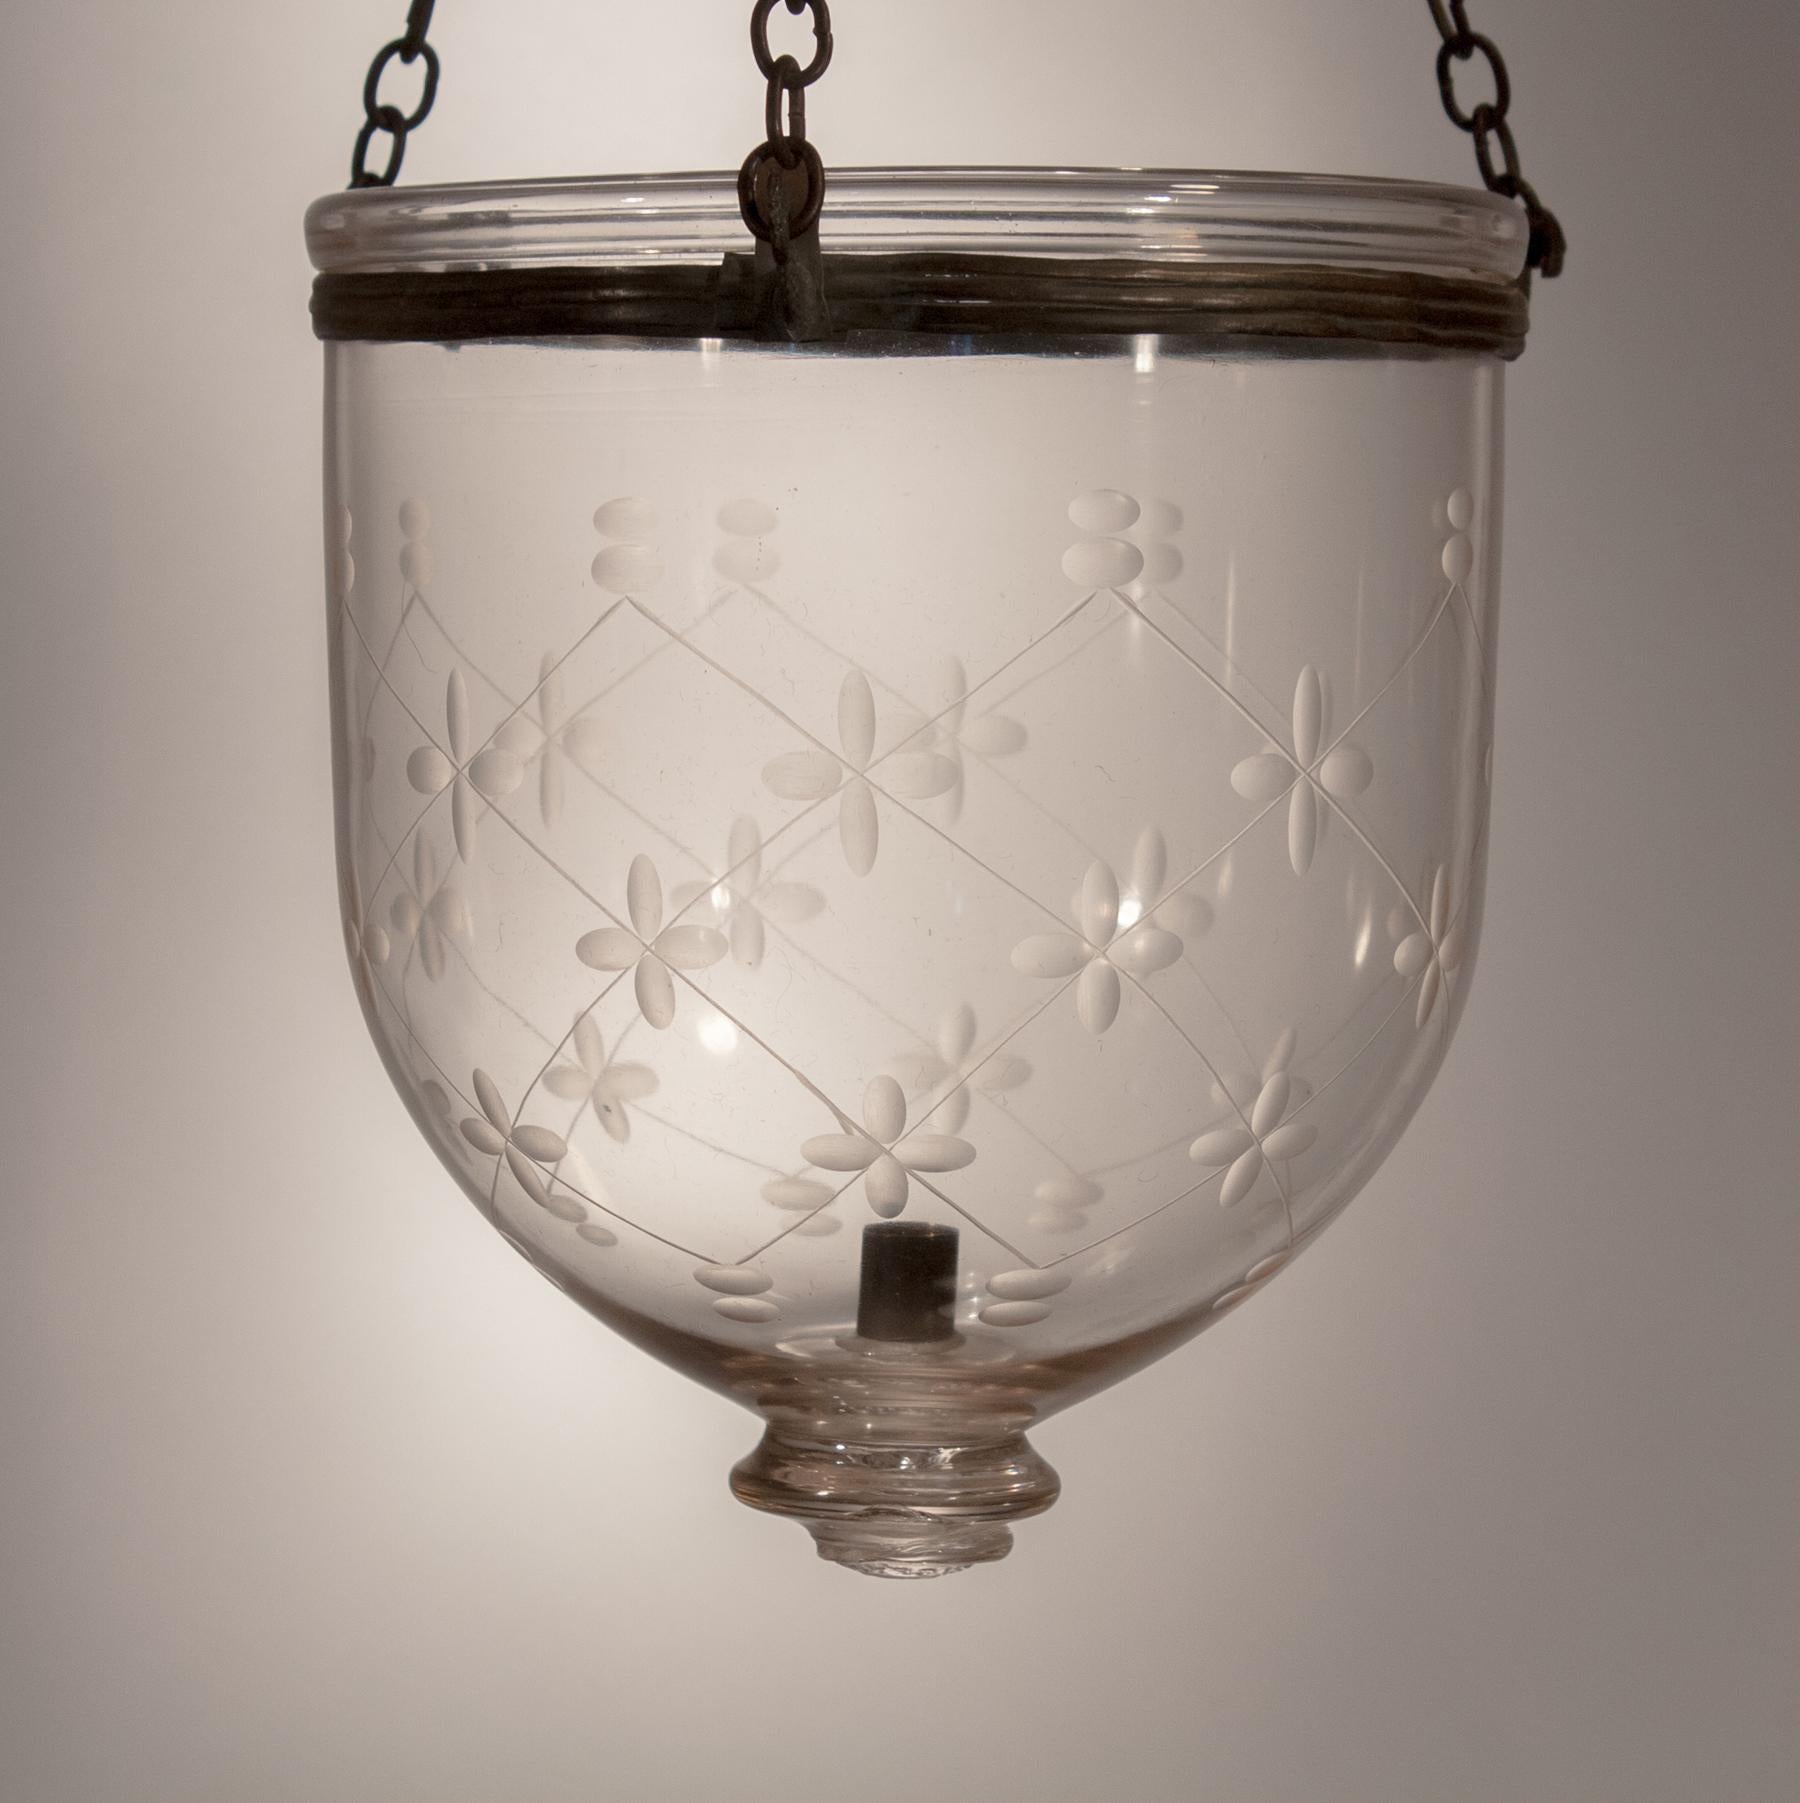  Petite Bell Jar Lantern with Etching 1